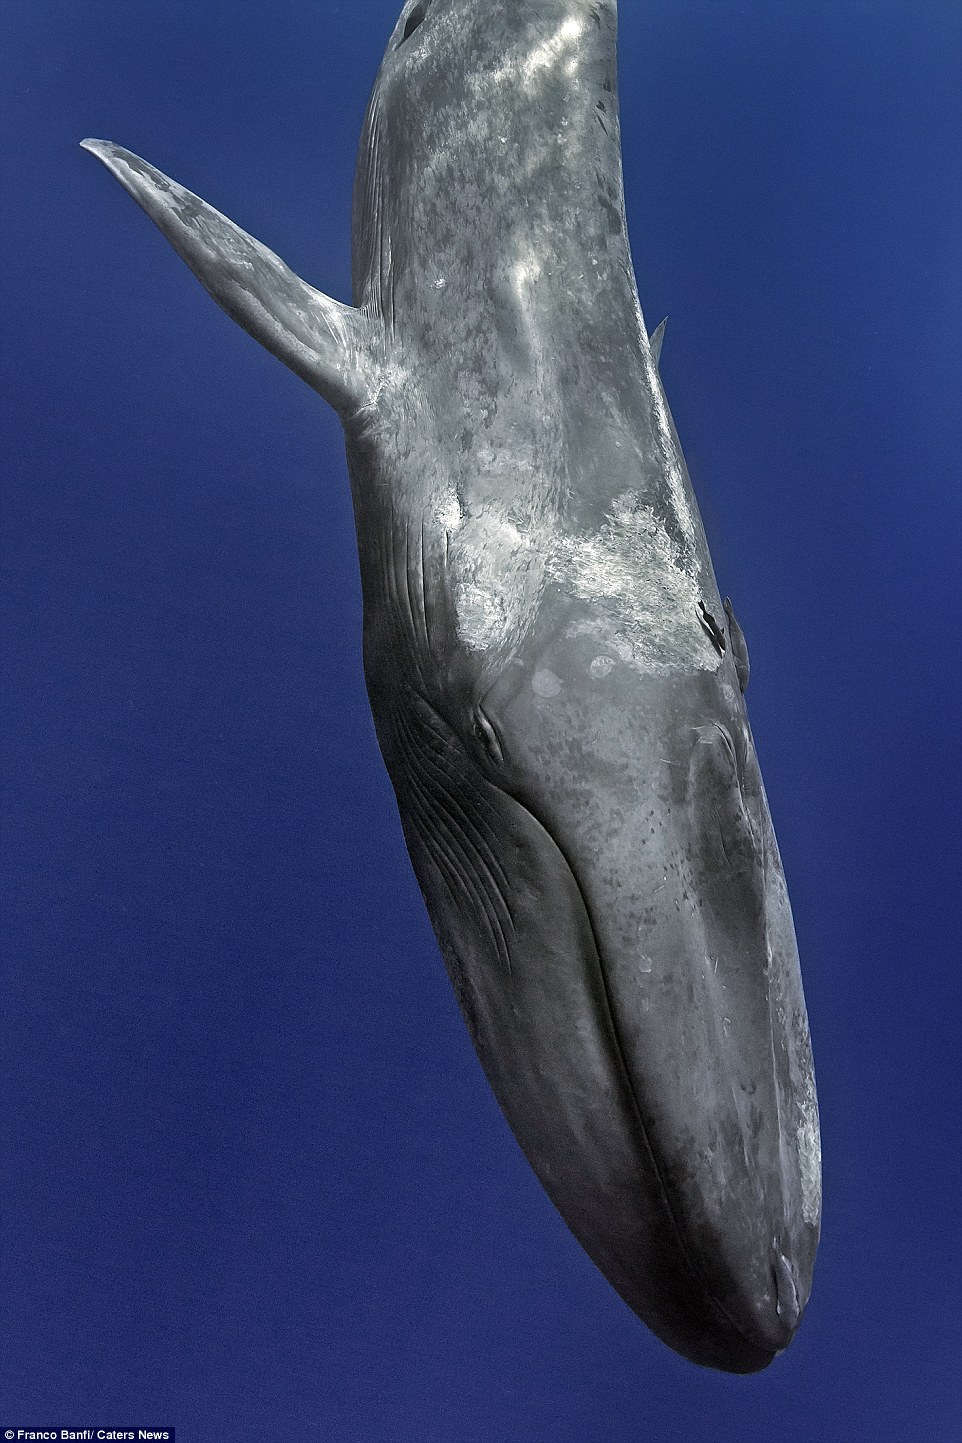 Cận cảnh cá voi xanh 170 tấn lớn nhất hành tinh